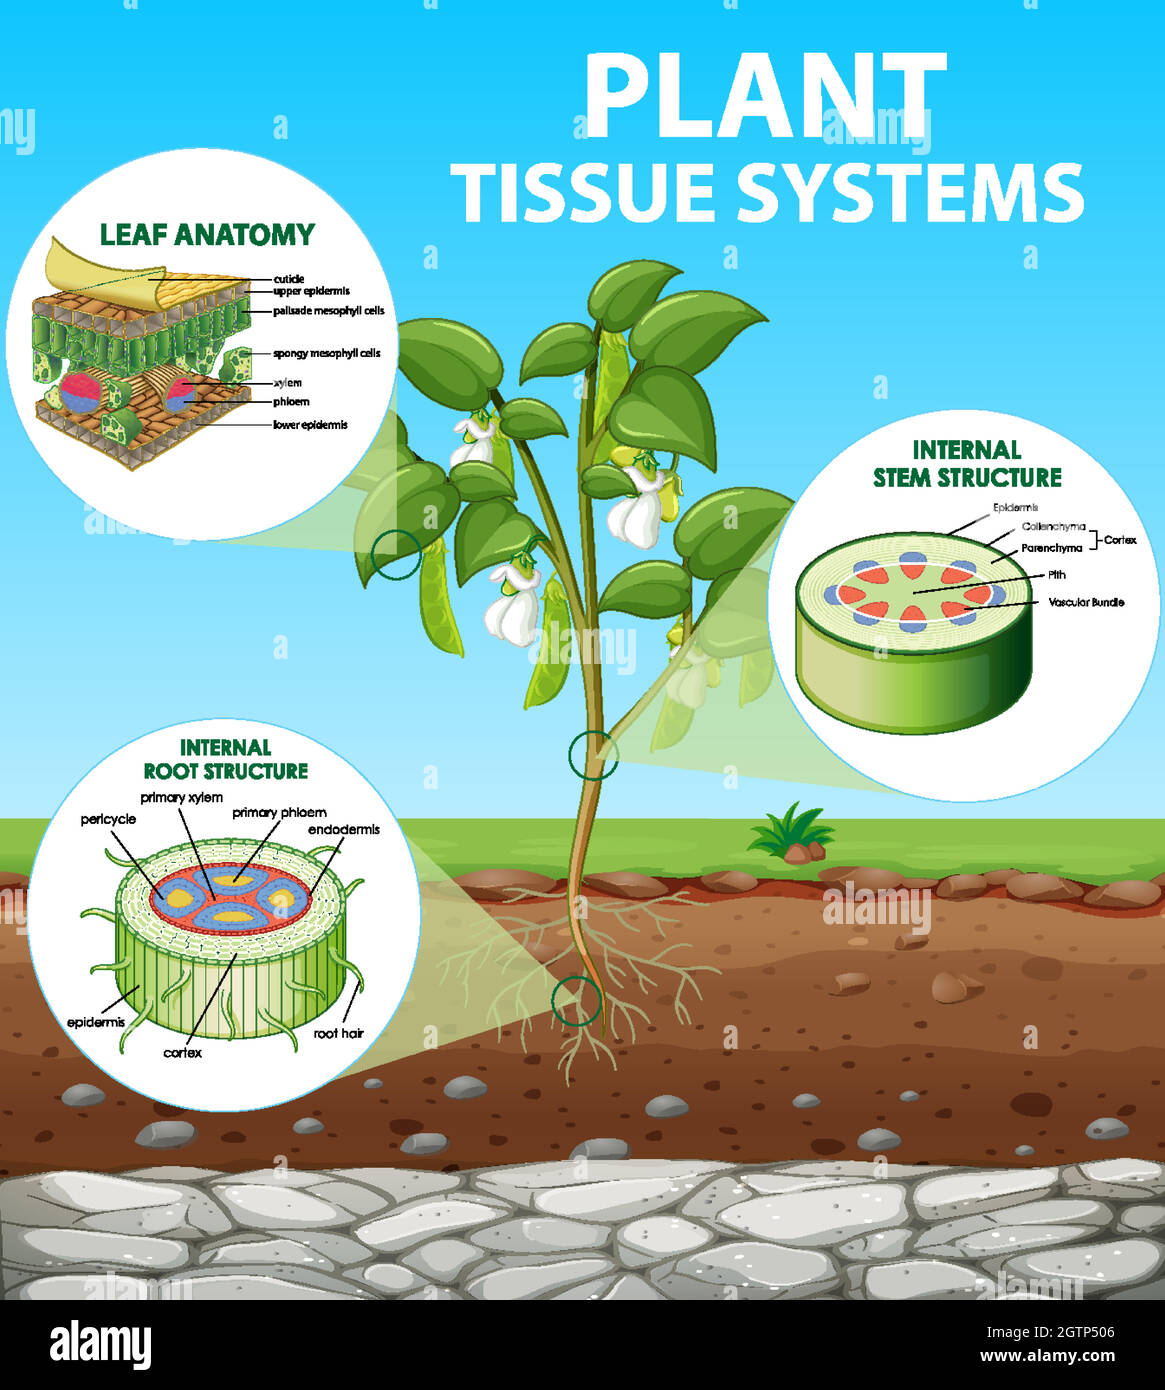 Schéma illustrant les systèmes de tissus végétaux Illustration de Vecteur